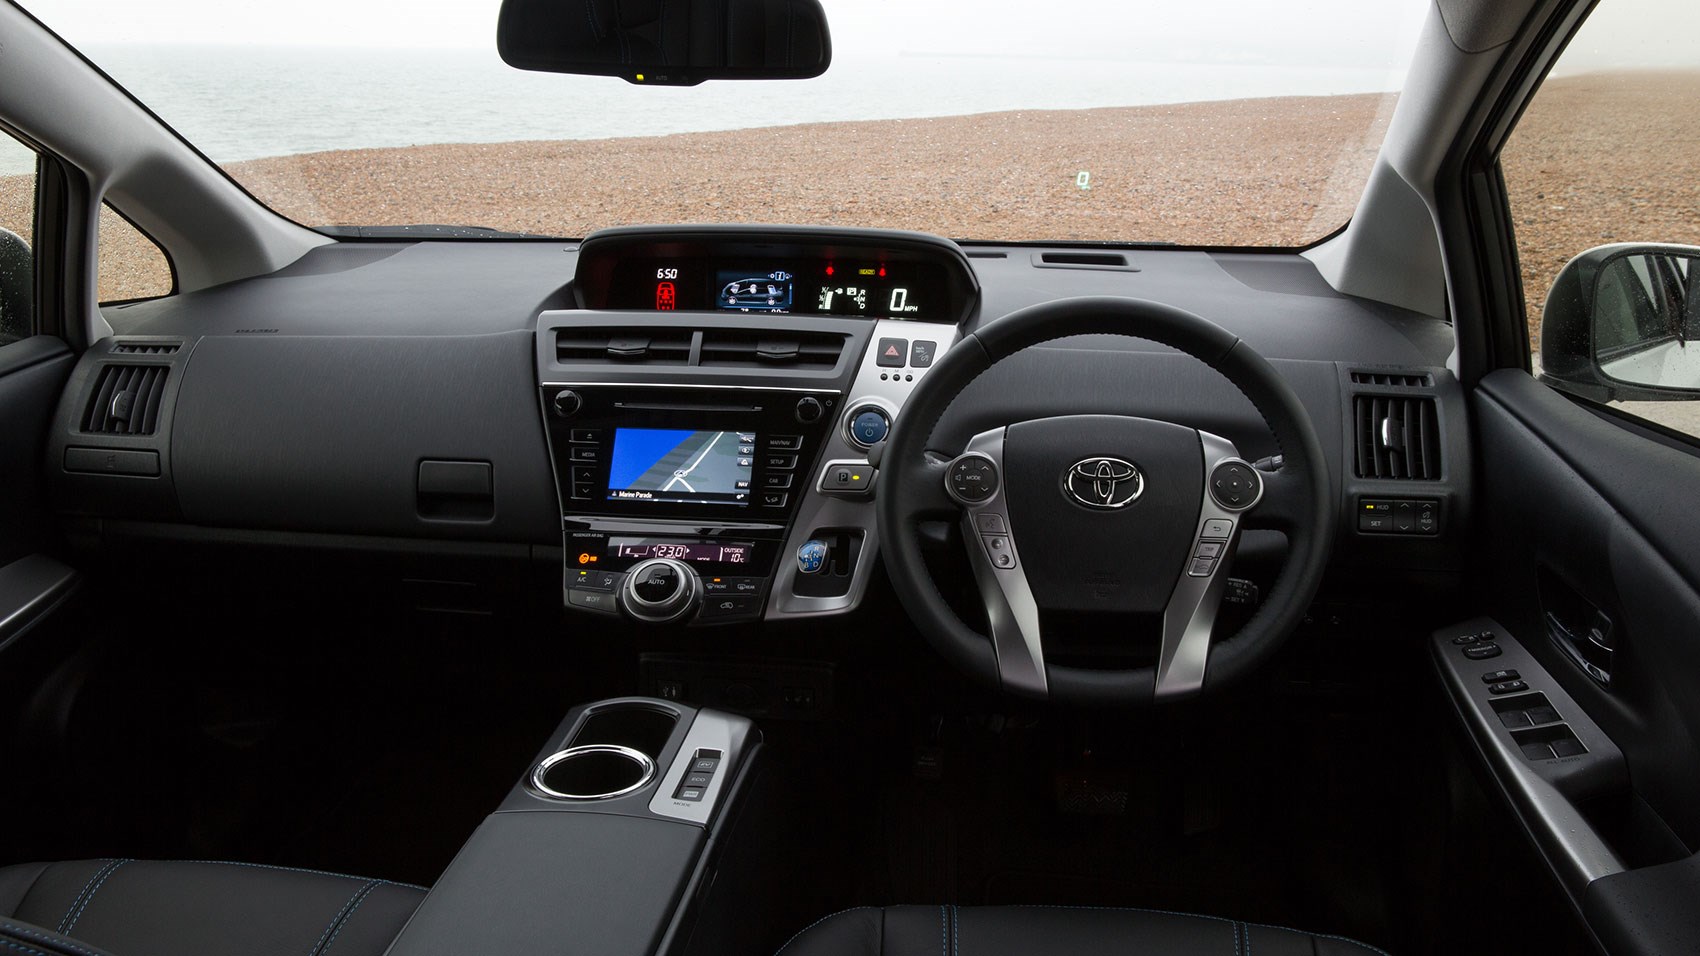 Toyota Prius Plus 2015 Review Car Magazine